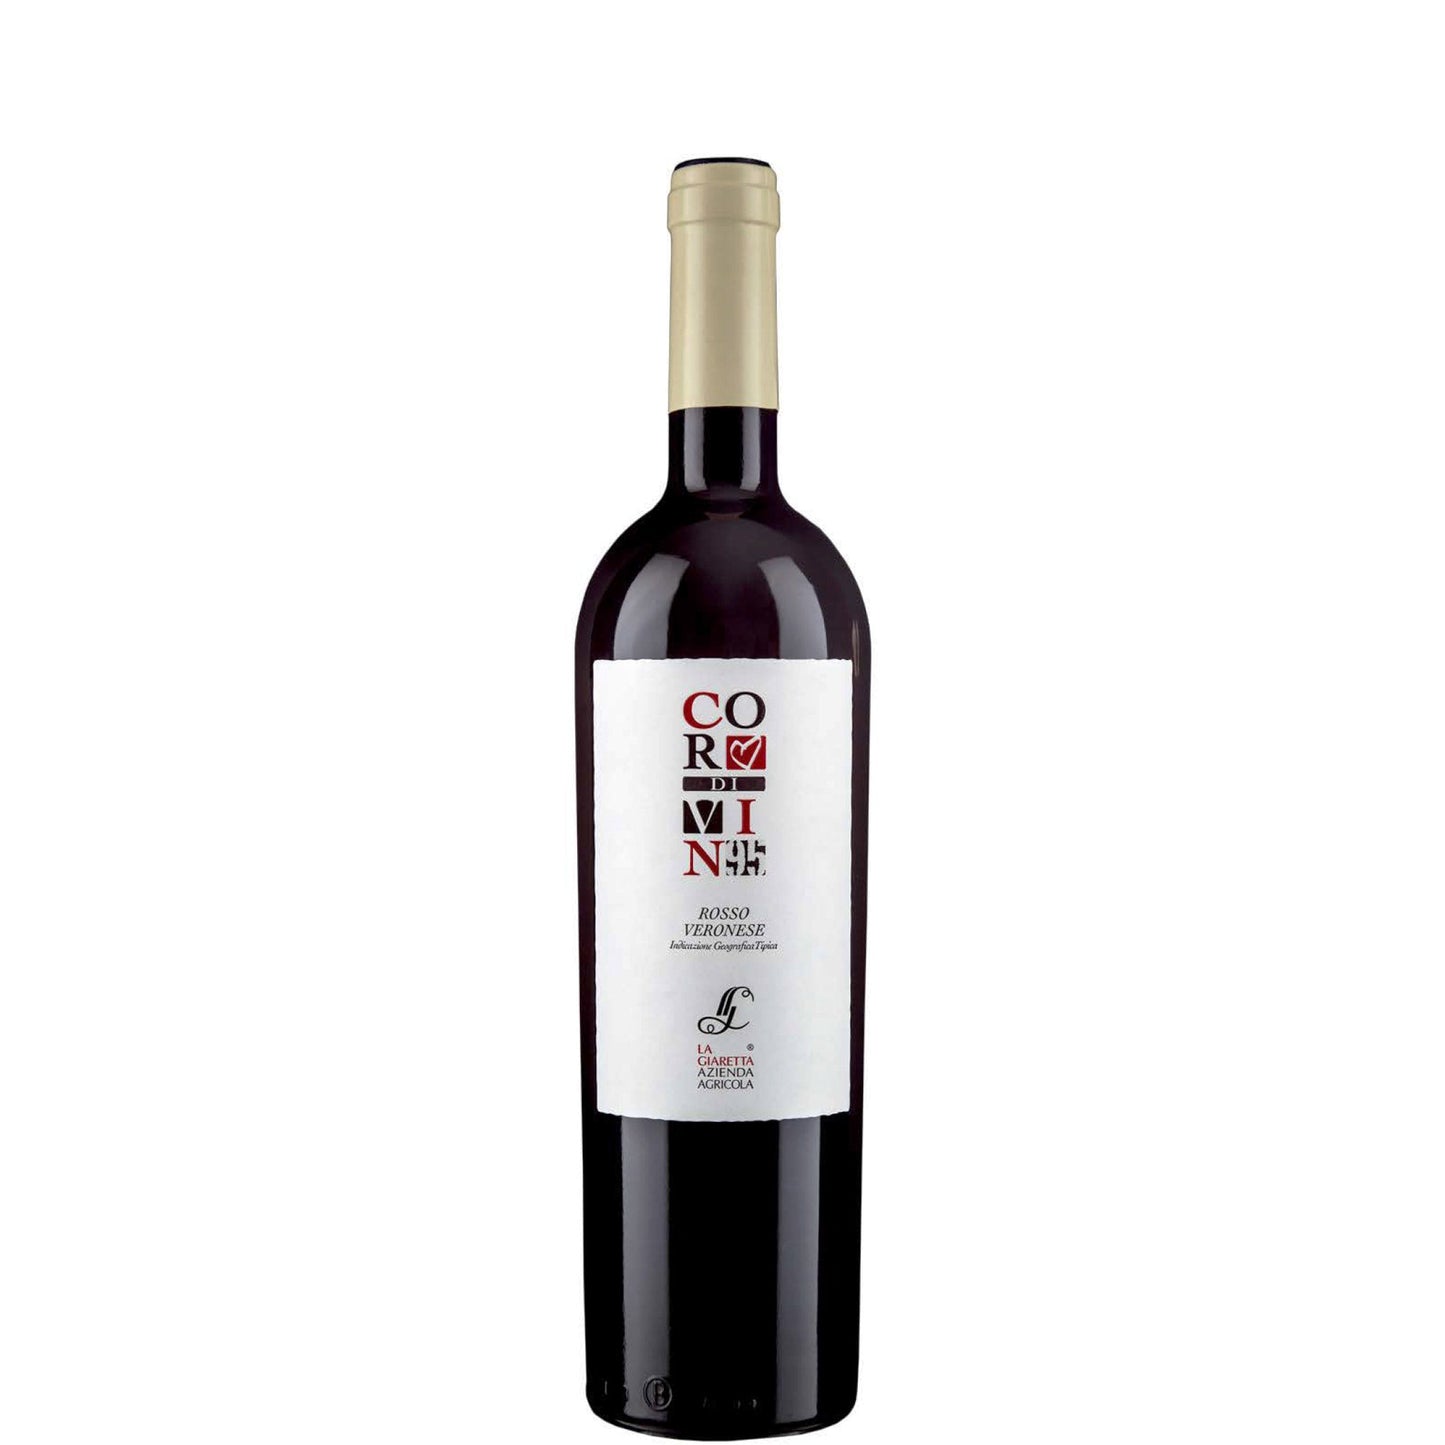 La Giaretta, Cor Di Vin 95 Rosso, 2016